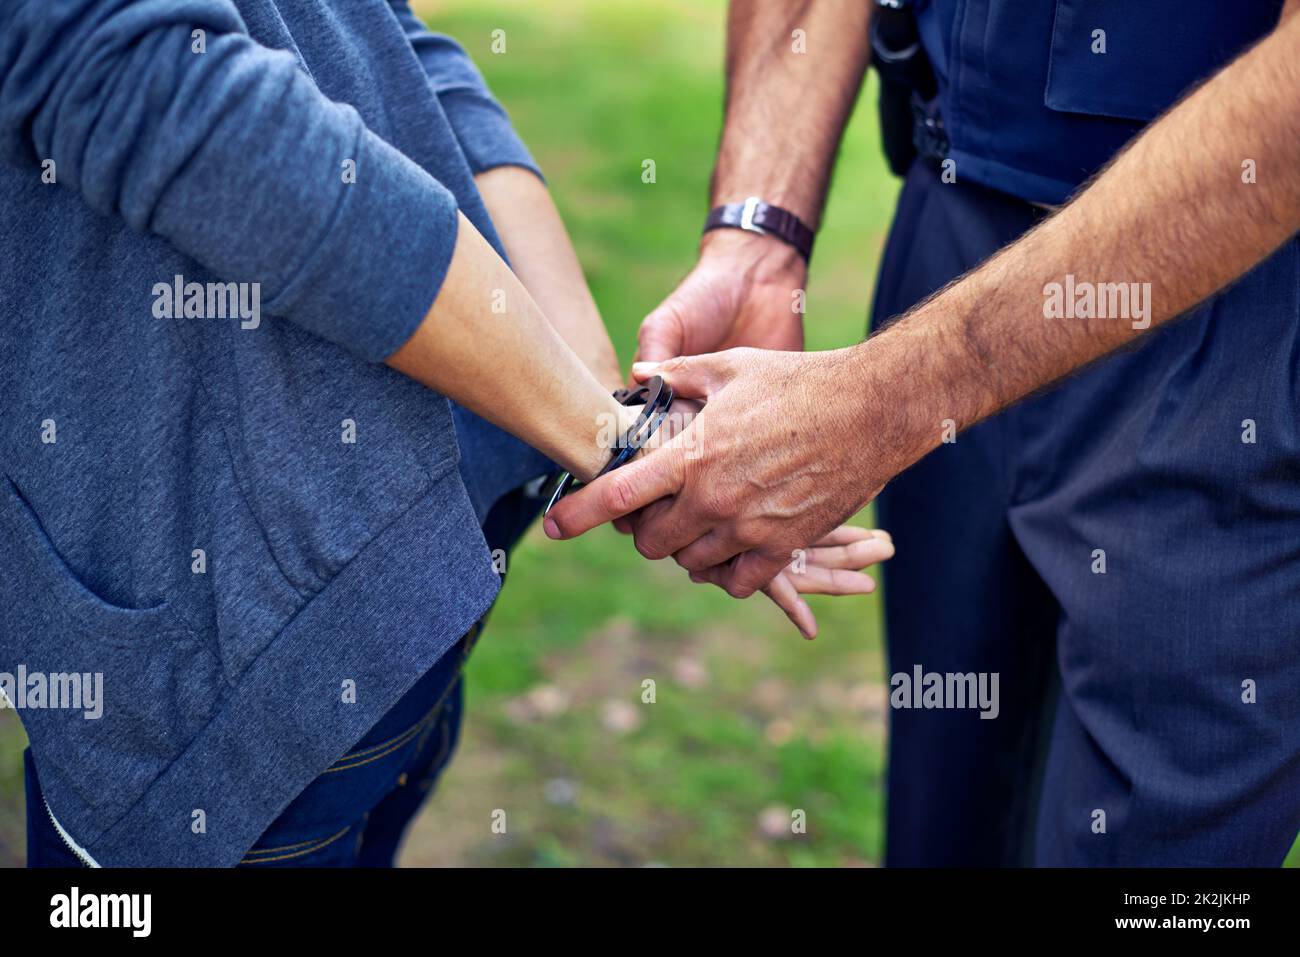 Thatll hält dich fest. Ausgeschnittene Aufnahme eines Polizisten, der einem Verdächtigen Handschellen auflegt. Stockfoto